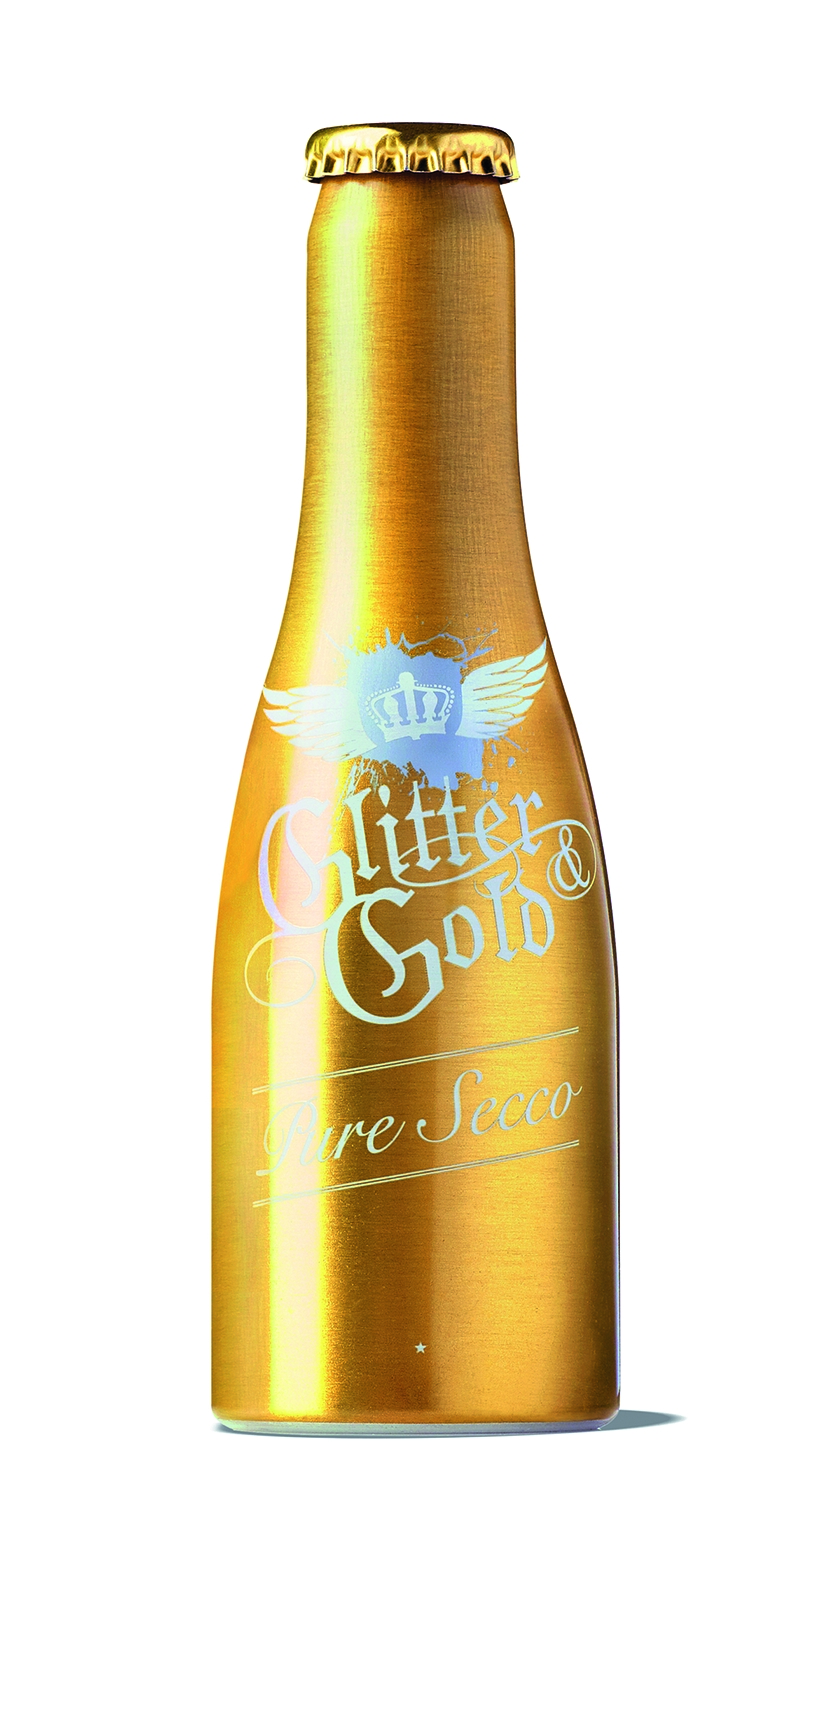 Glitter &gold Sekt, Metallflasche, Pure secco, 7% Alc., 200ml